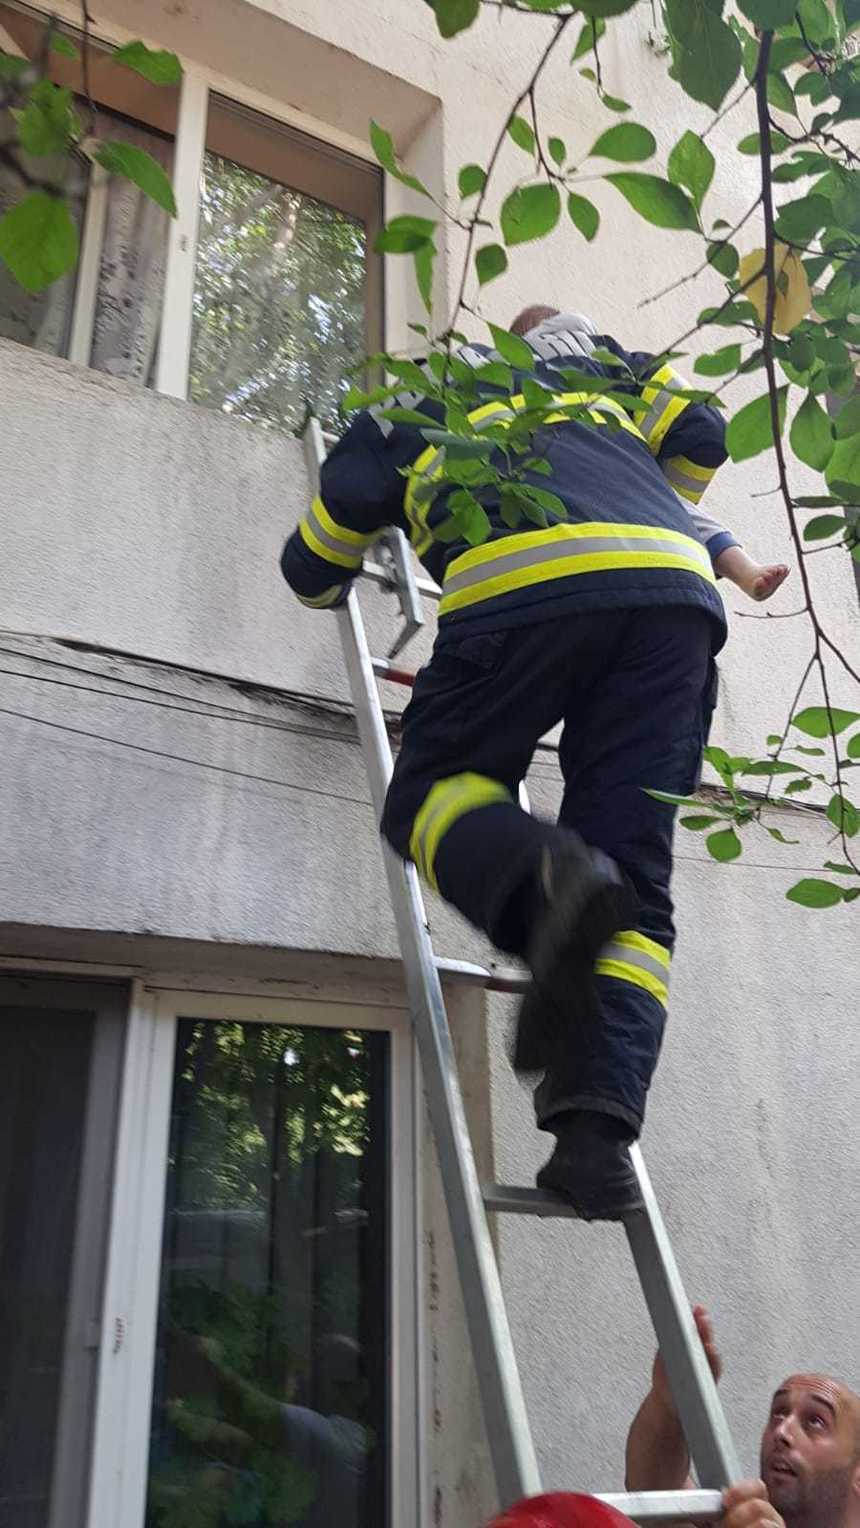 Copil de doi ani din Focşani, salvat de pompieri de pe pervazul unei ferestre de la etajul întâi

